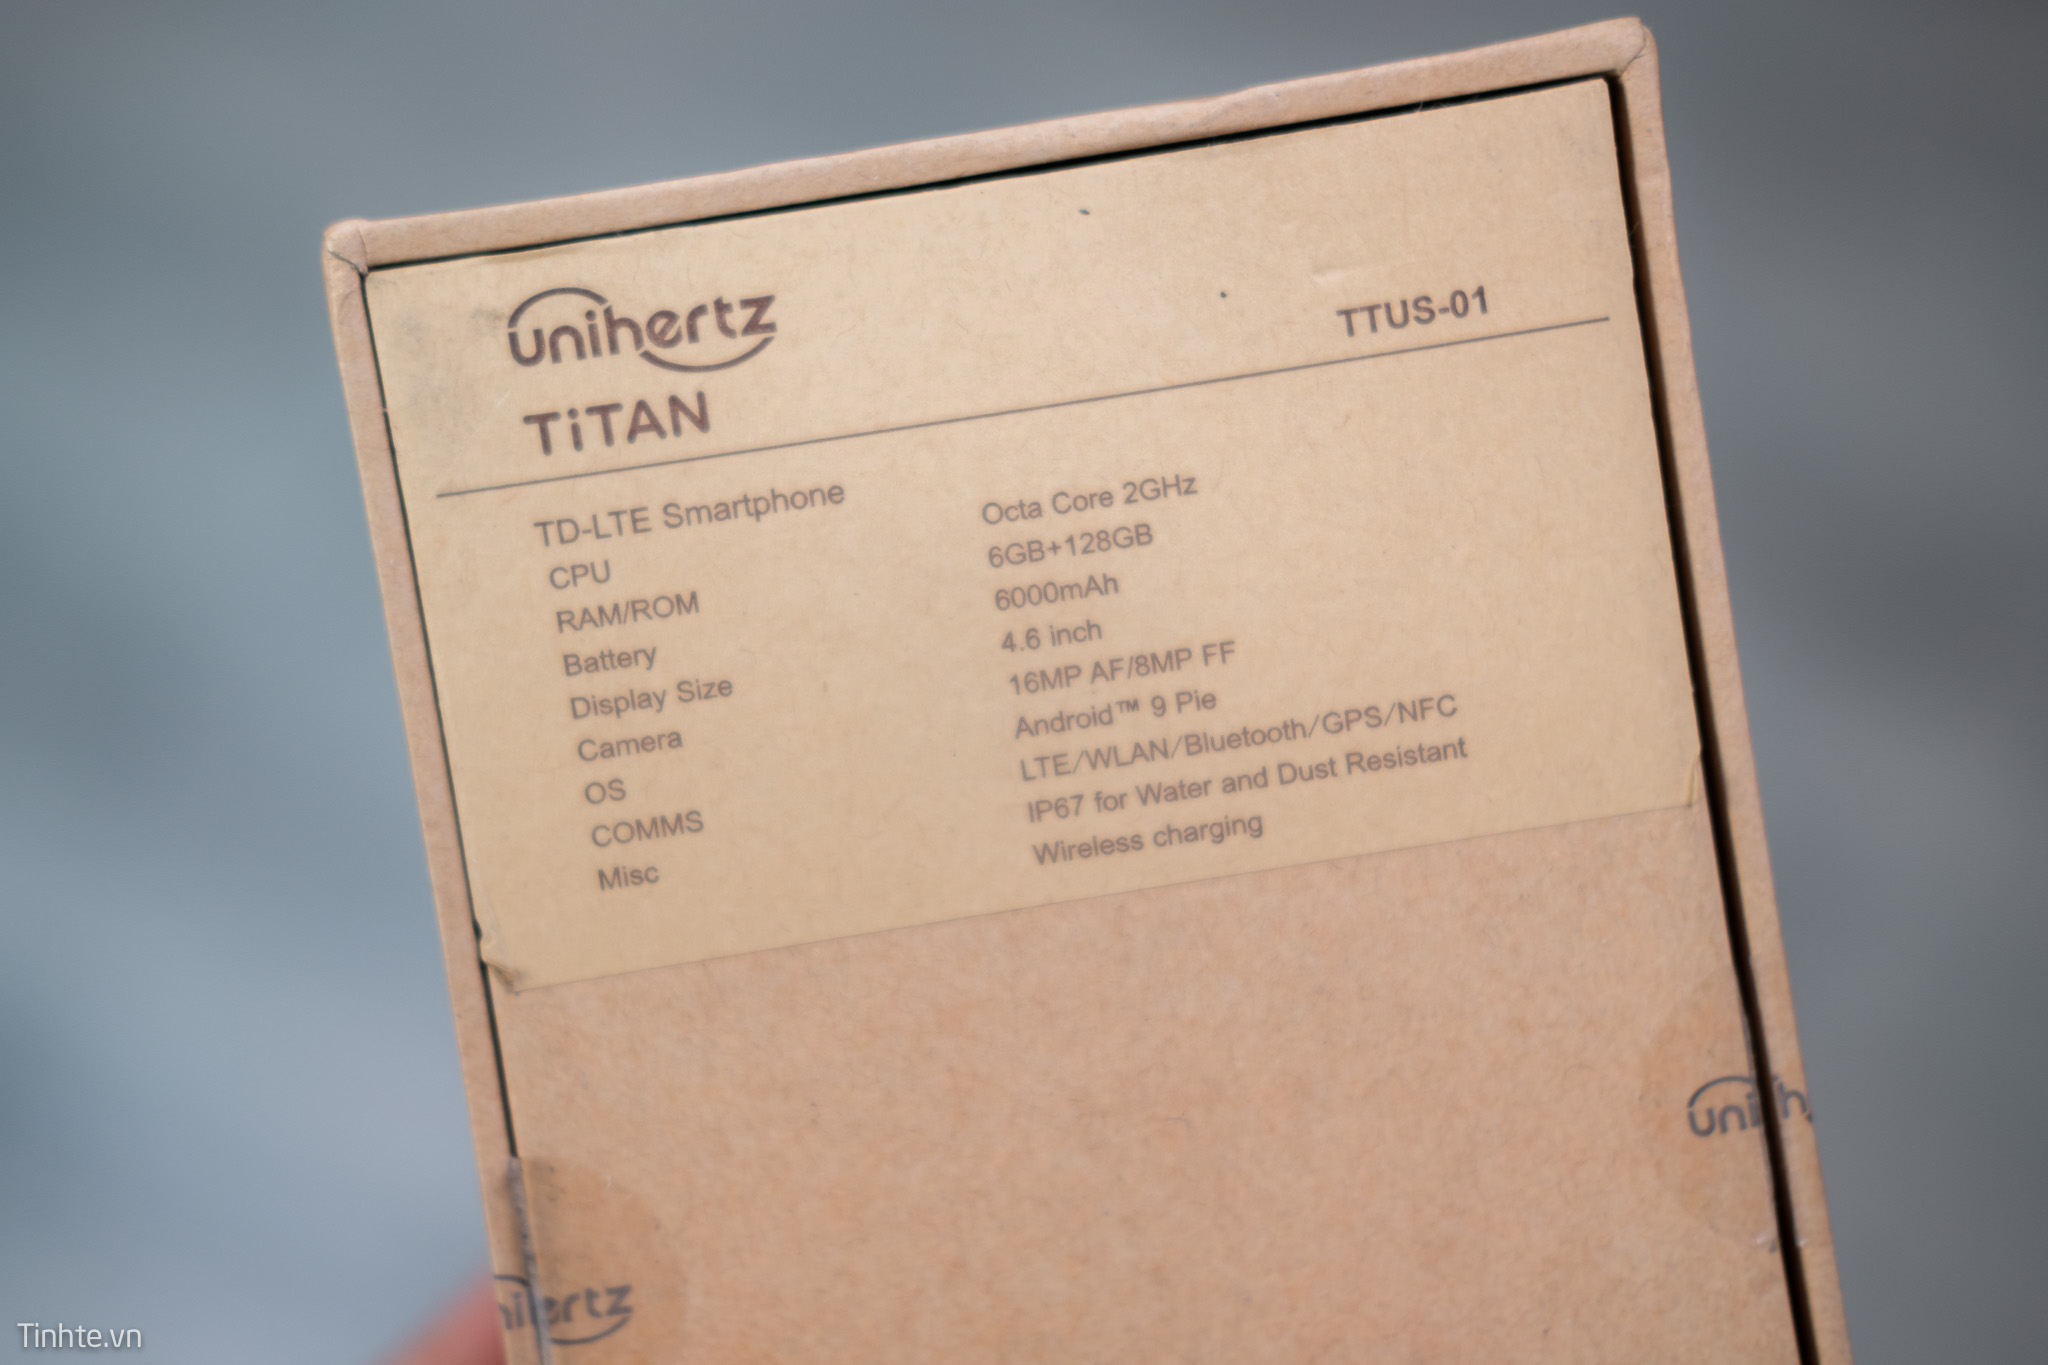 UnihertZ_Titan-24.jpg